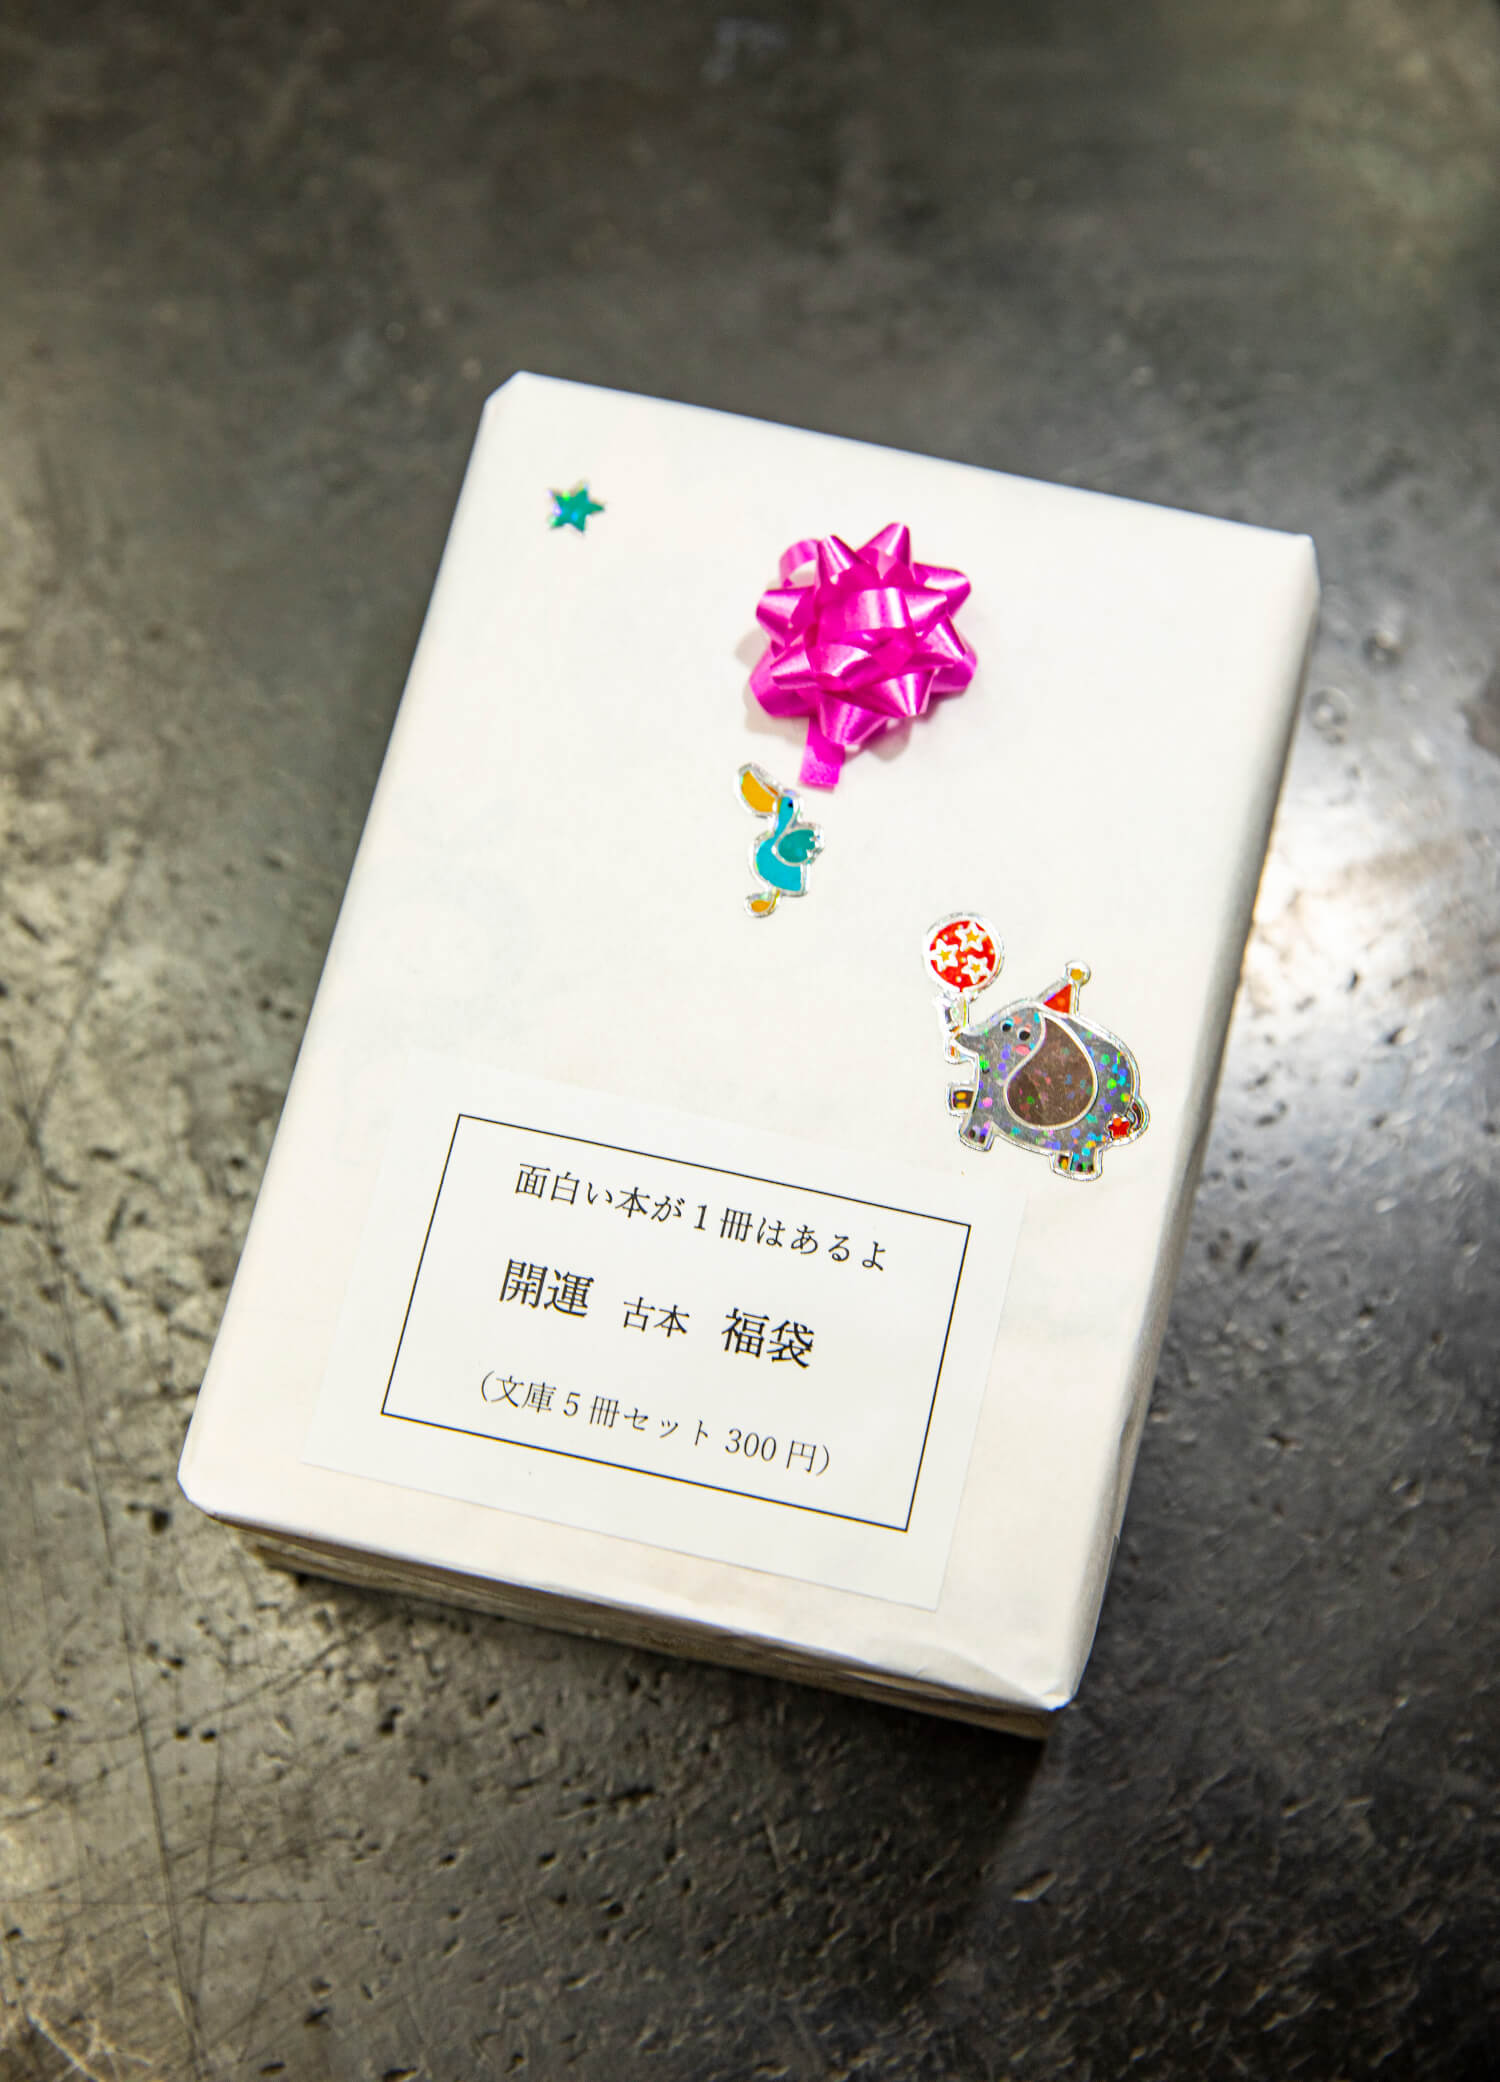 文庫本5冊セットで300円の「開運古本福袋」。装飾も愛らしい。